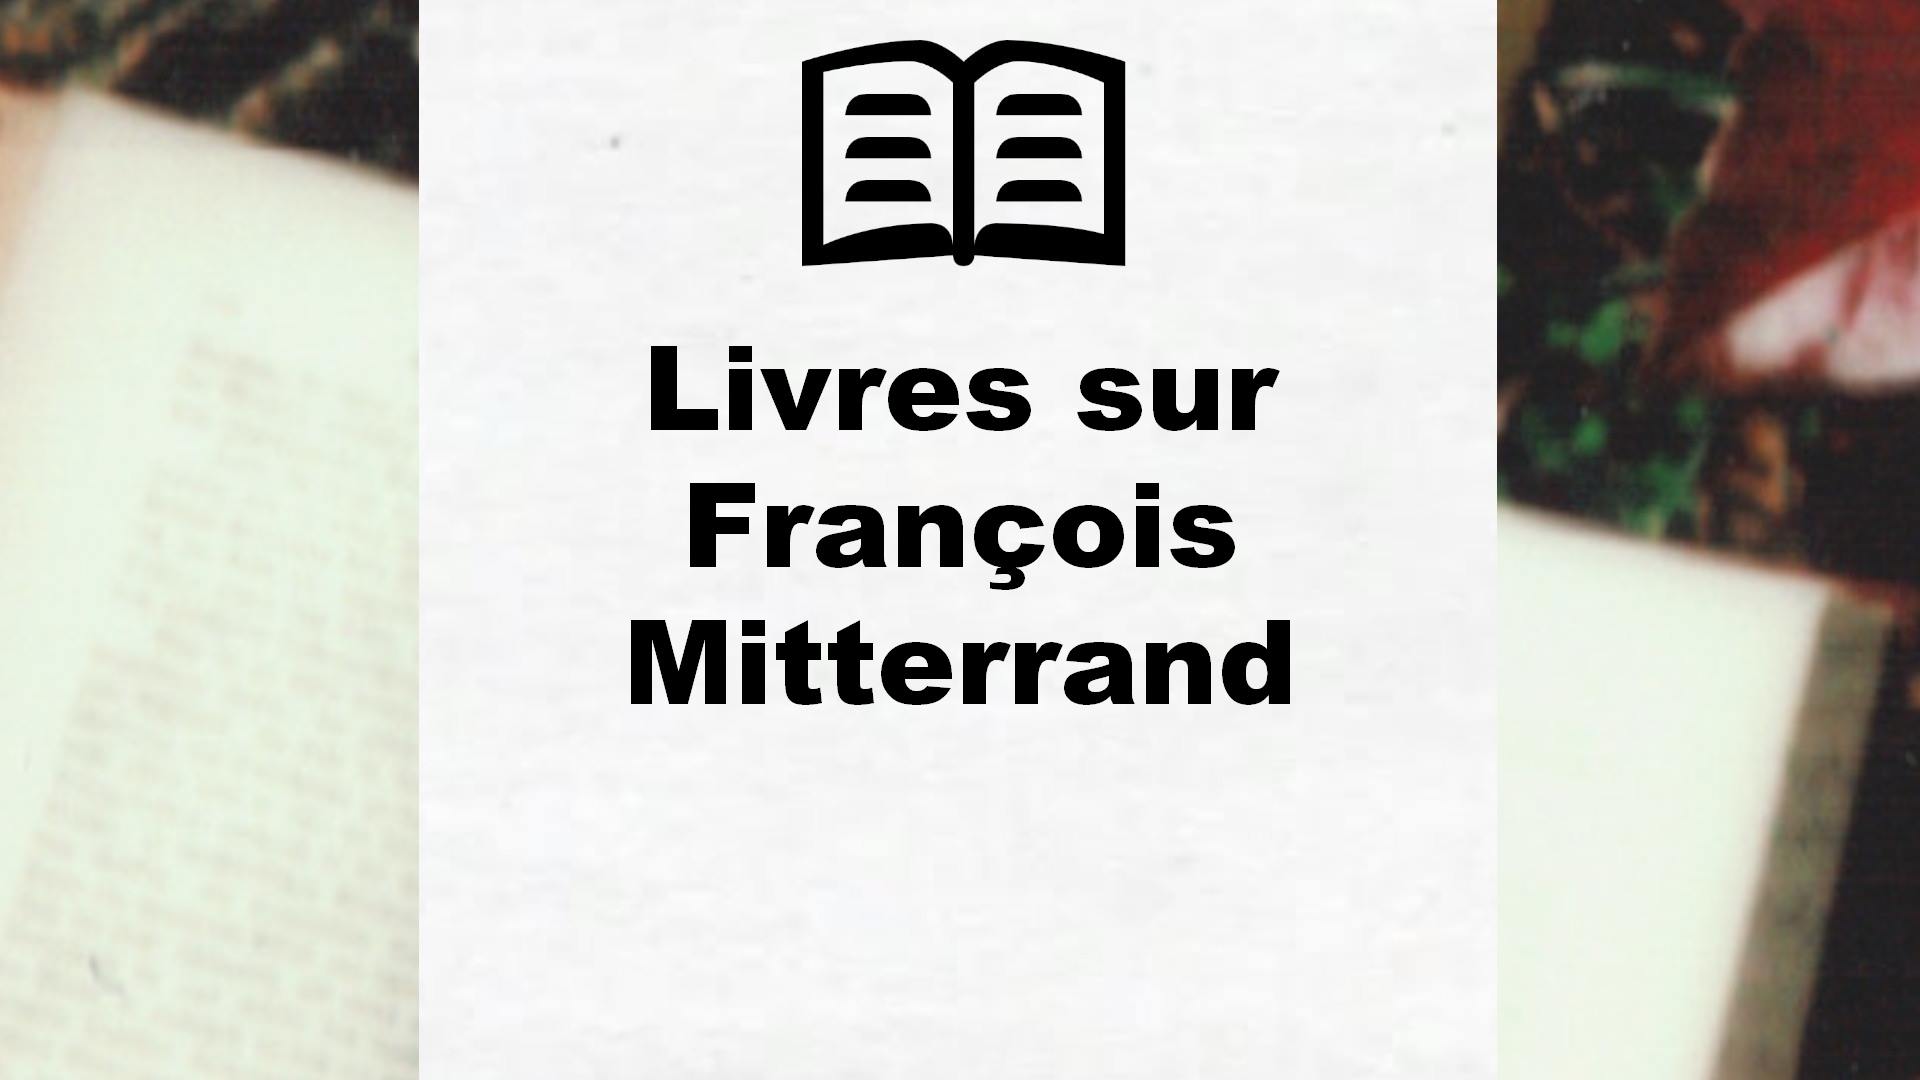 Livres sur François Mitterrand